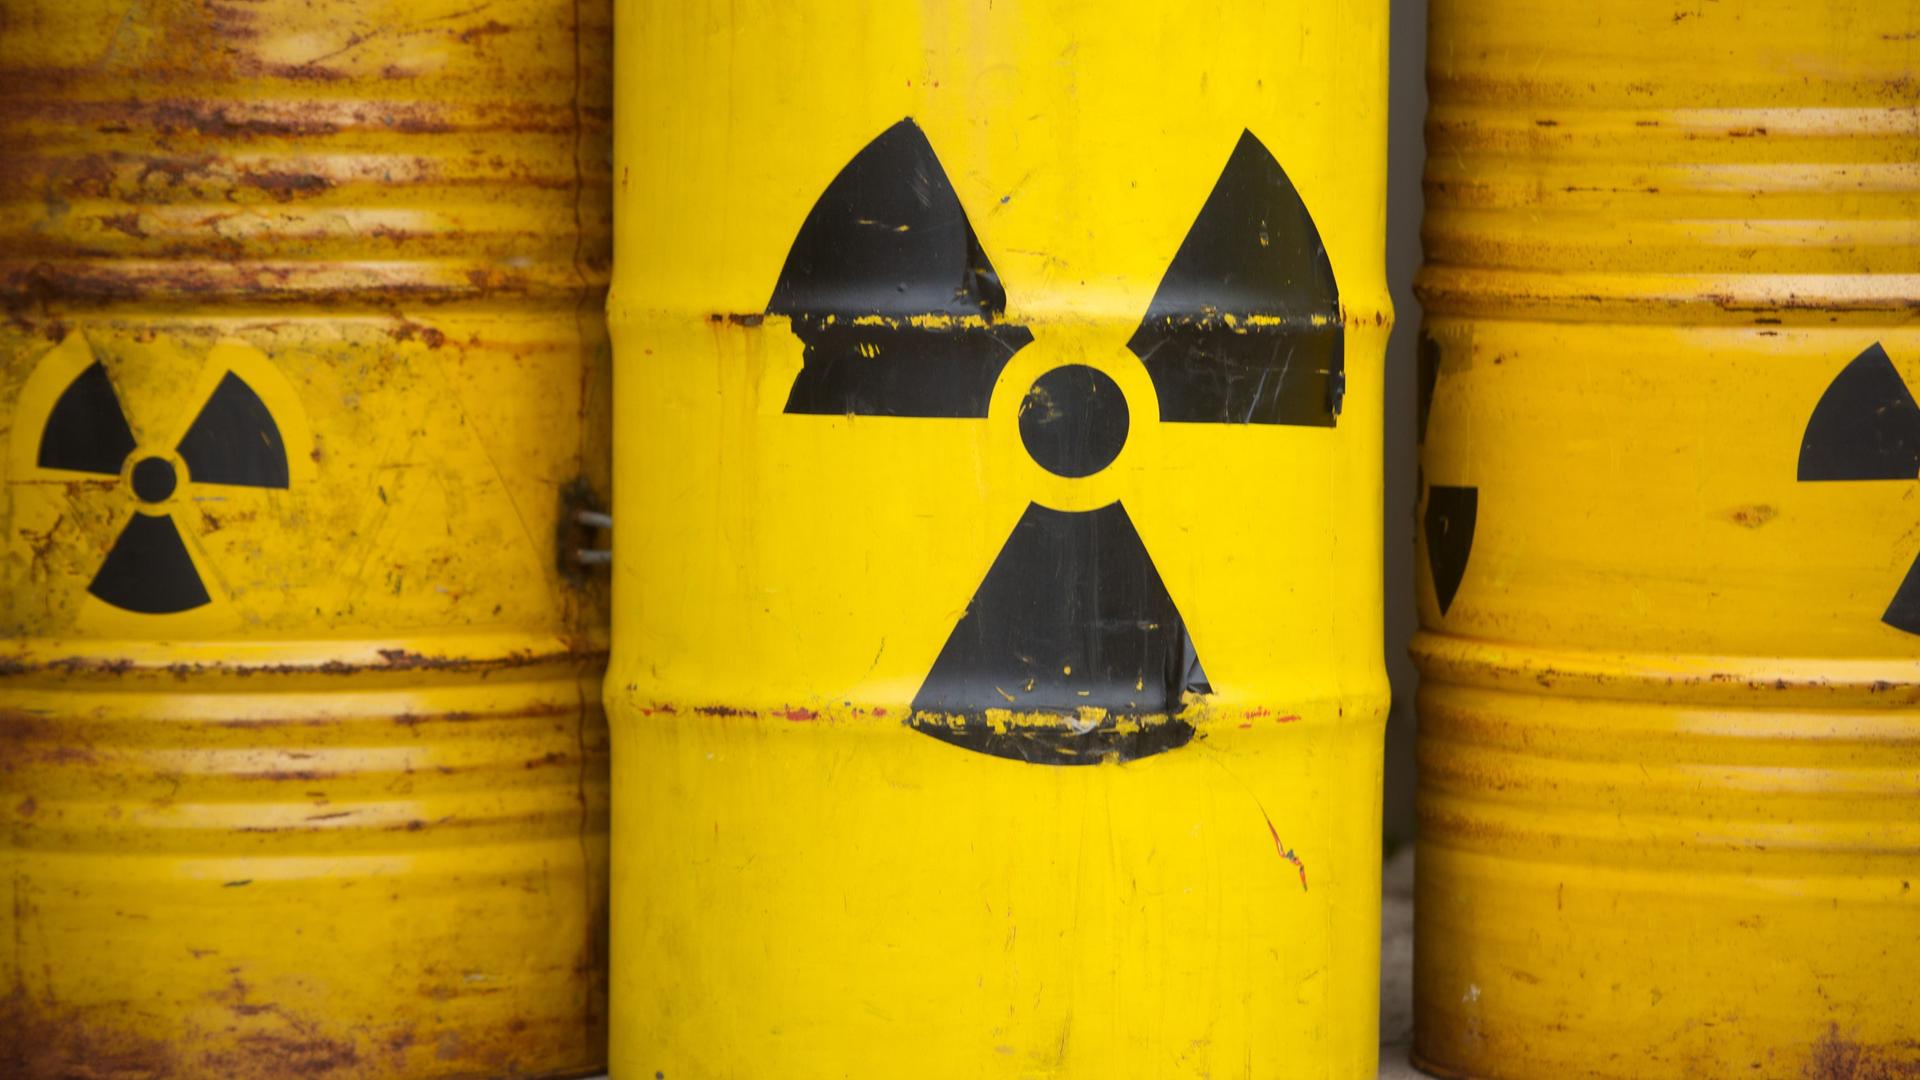 Zu sehen sind gelbe Tonnen mit dem Radioaktiv-Zeichen.